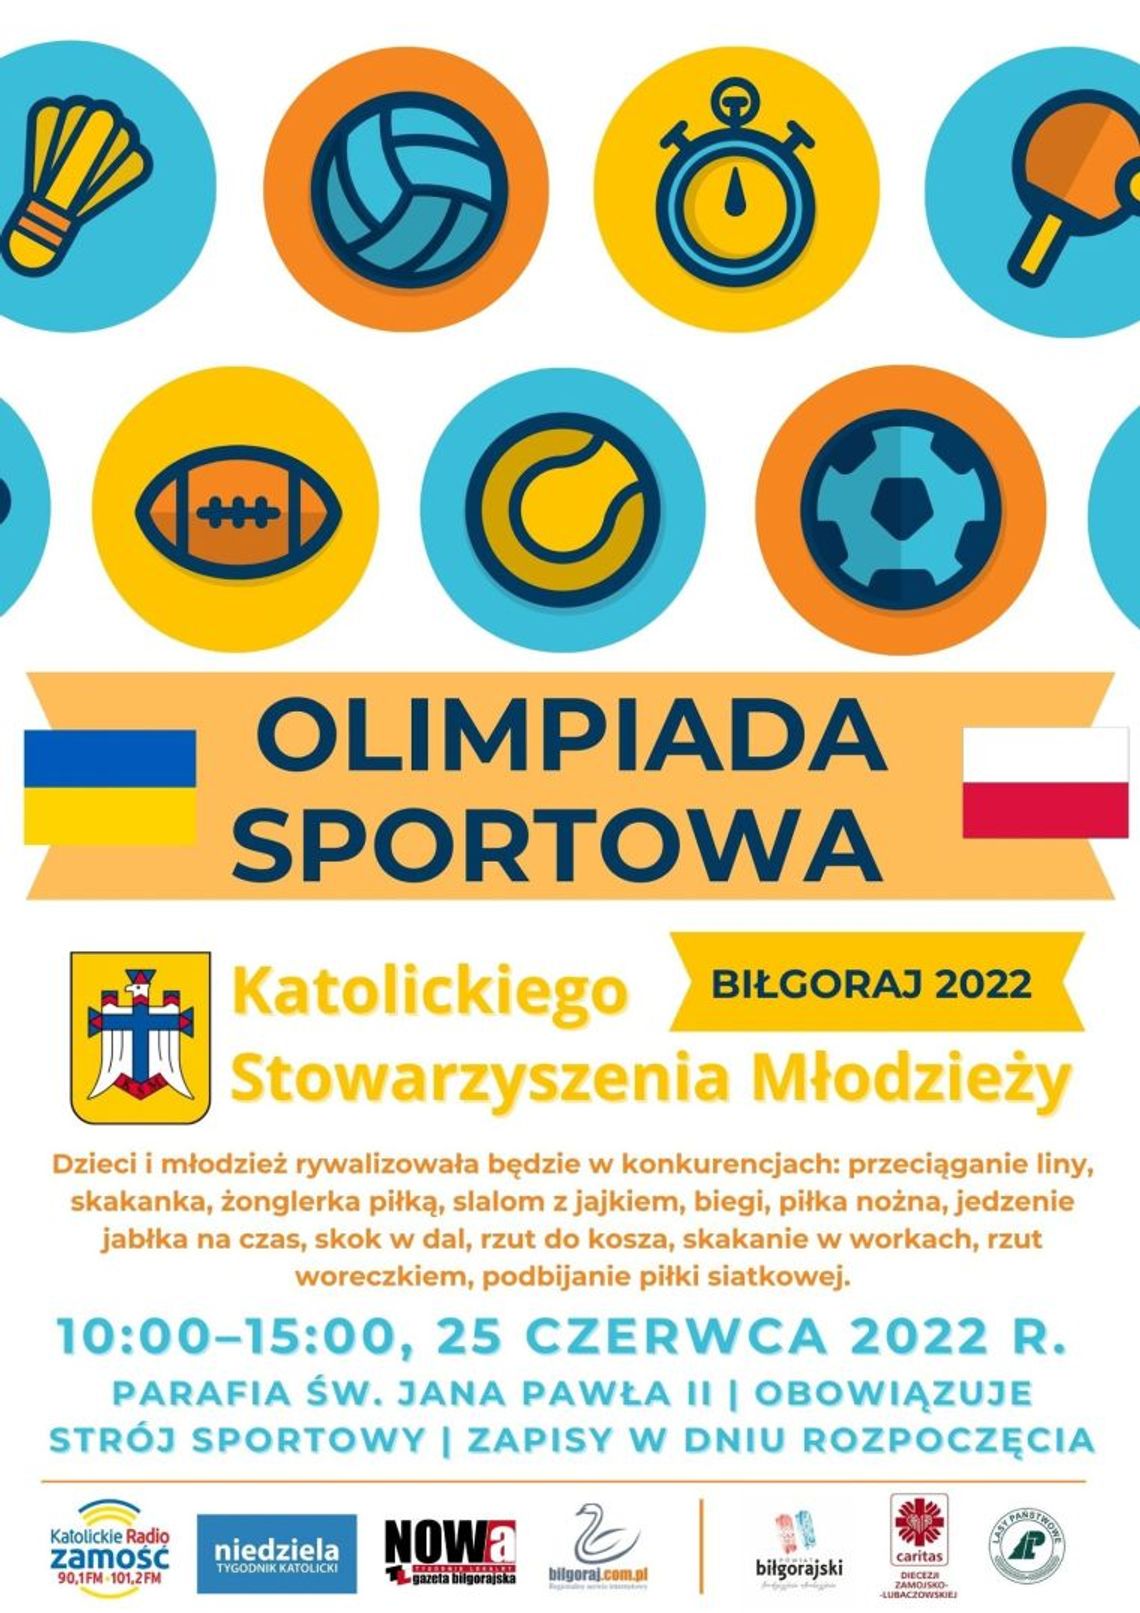 Olimpiada Sportowa Katolickiego Stowarzyszenia Młodzieży w Biłgoraju